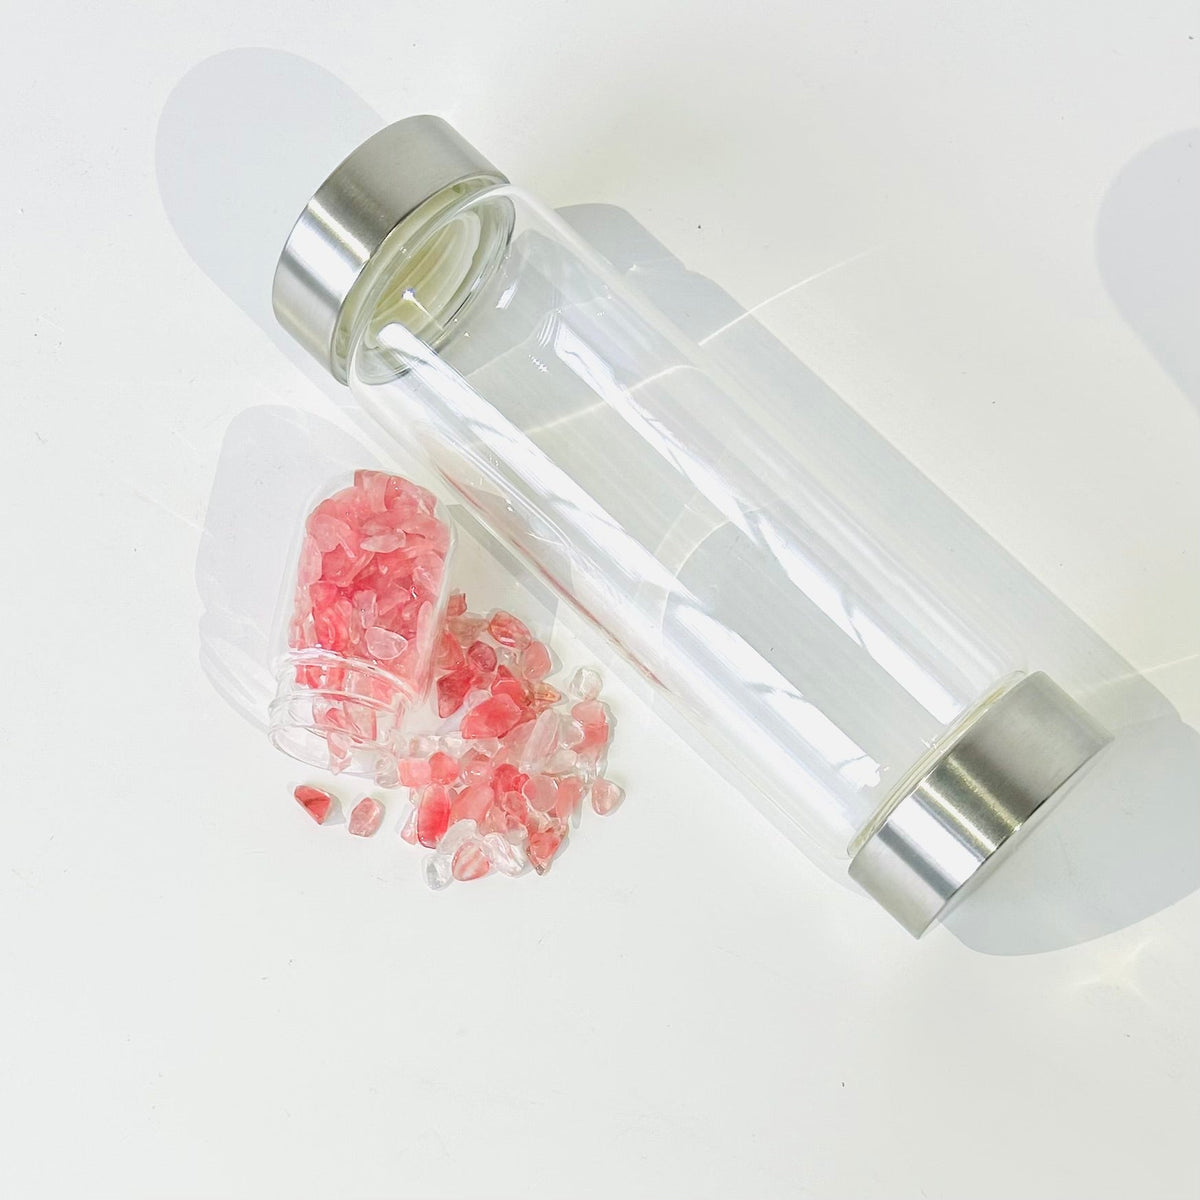 Gemstone Water Bottle, Clear Quartz